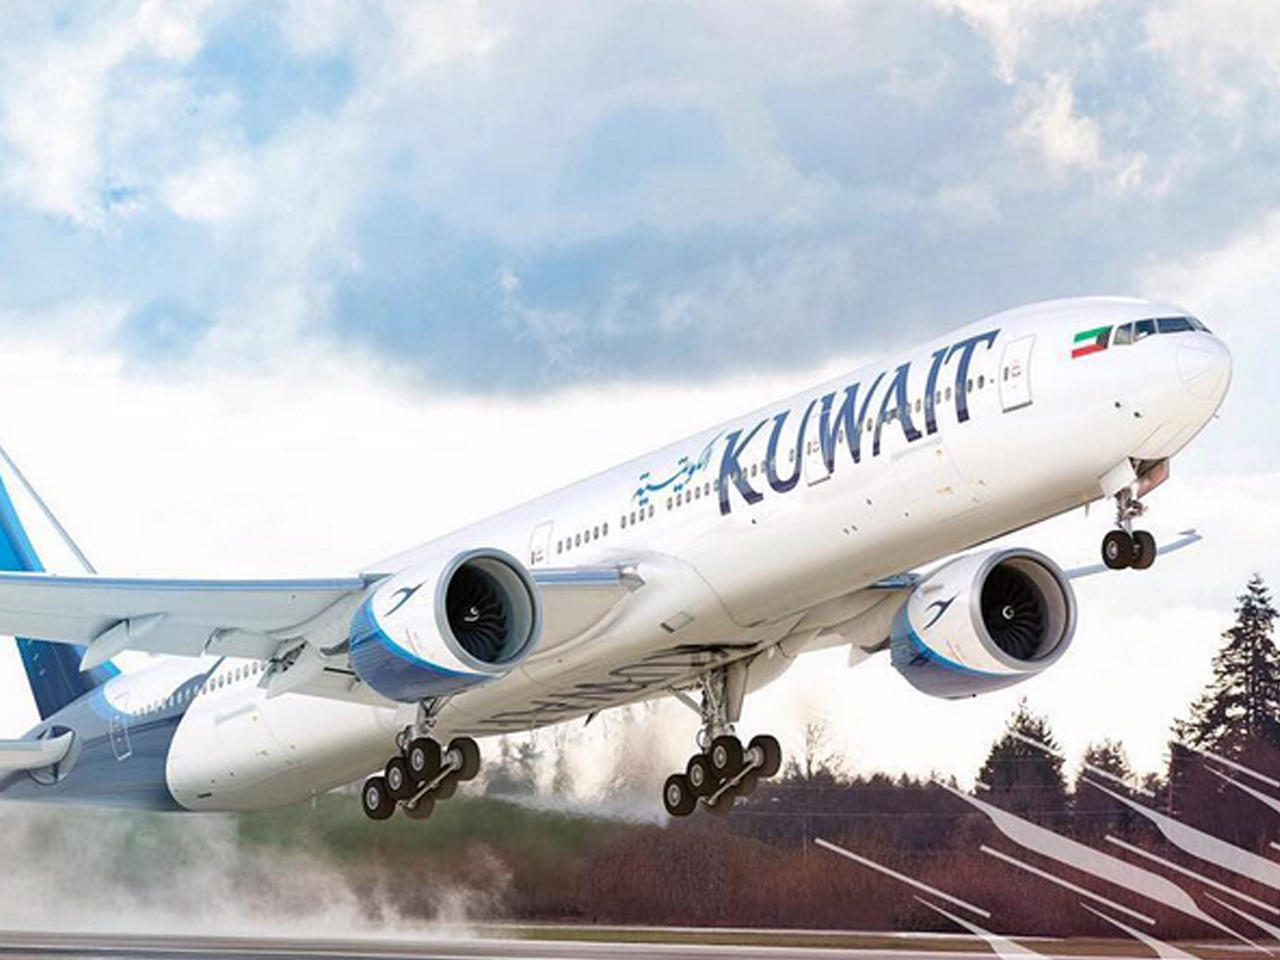 "الكويتية" تتسلم طائرة "الوفرة" التاسعة من طراز "بوينغ 777" للمدى الطويل  